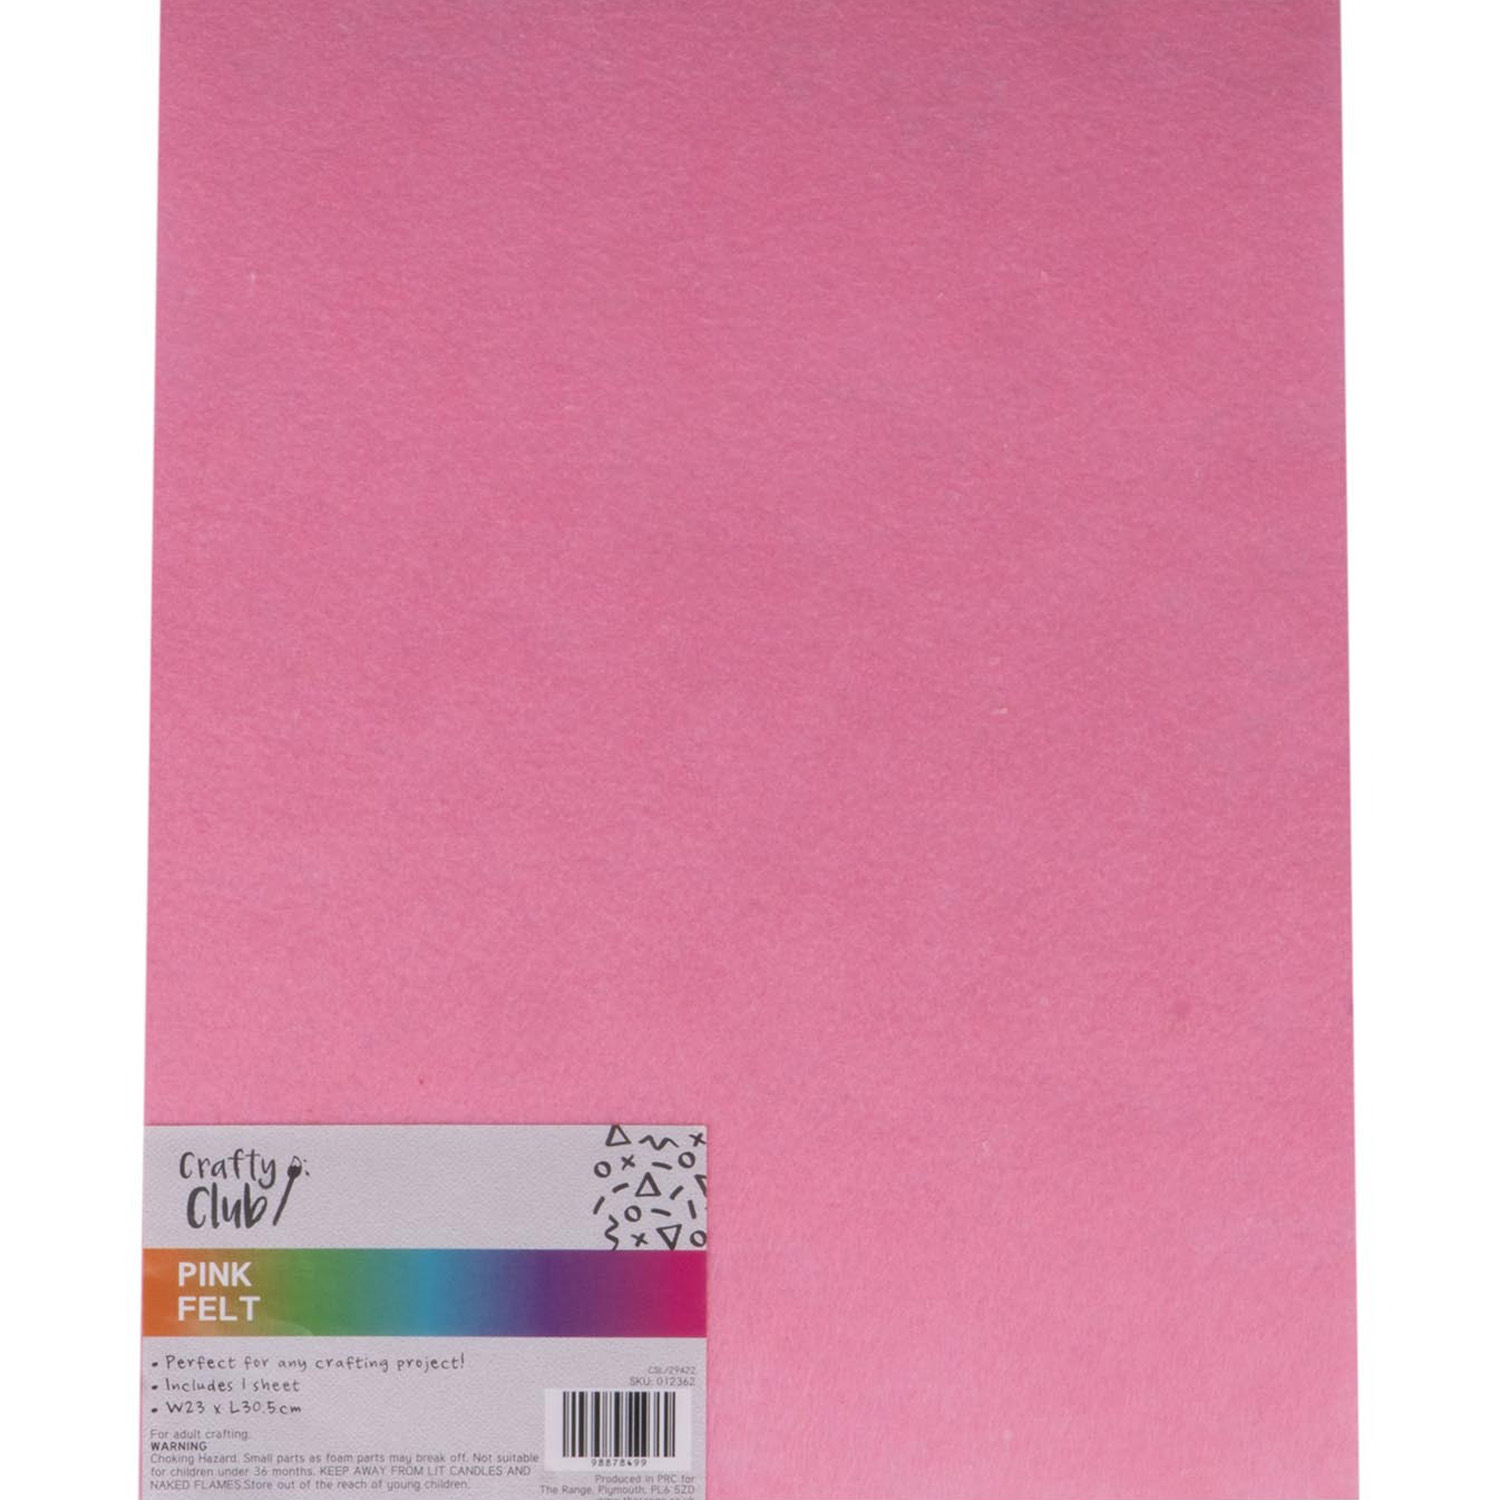 Crafty Club Felt Sheet - Pink Image